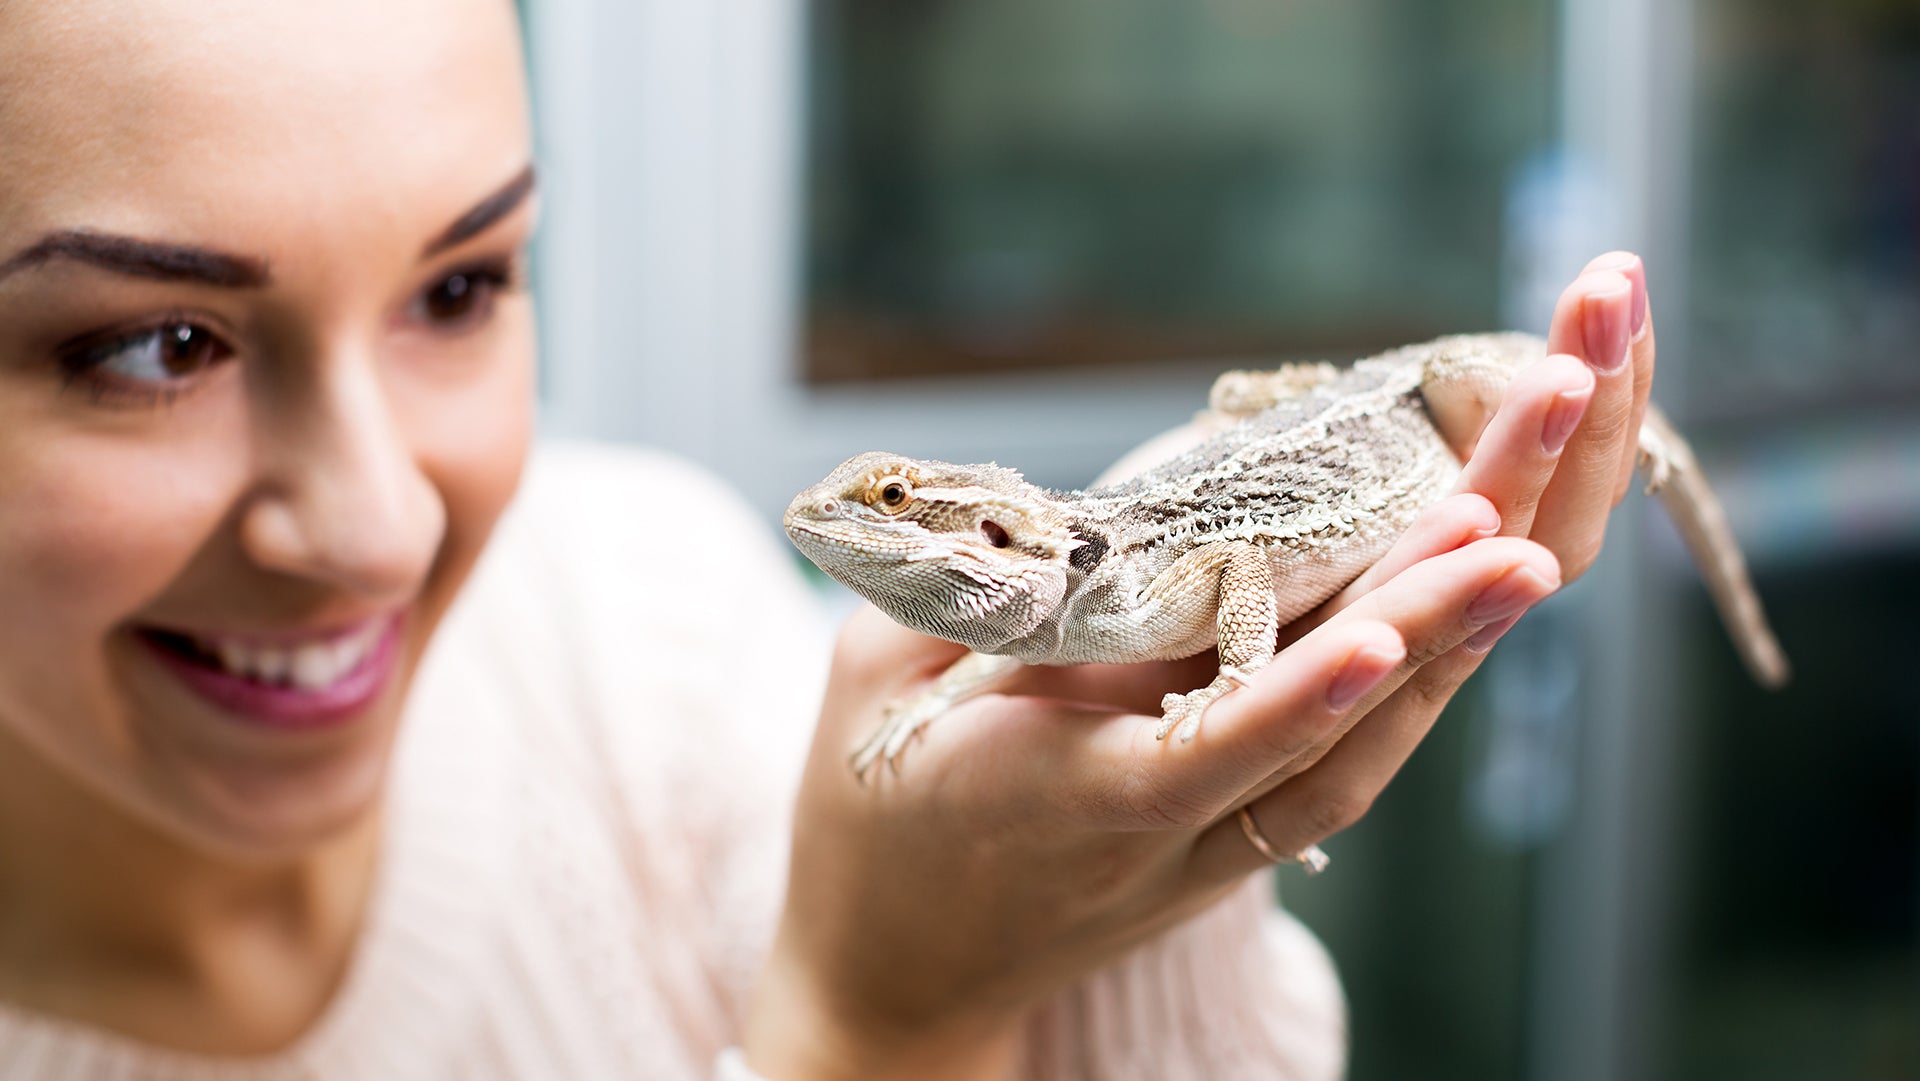 Women hold stunning chameleon